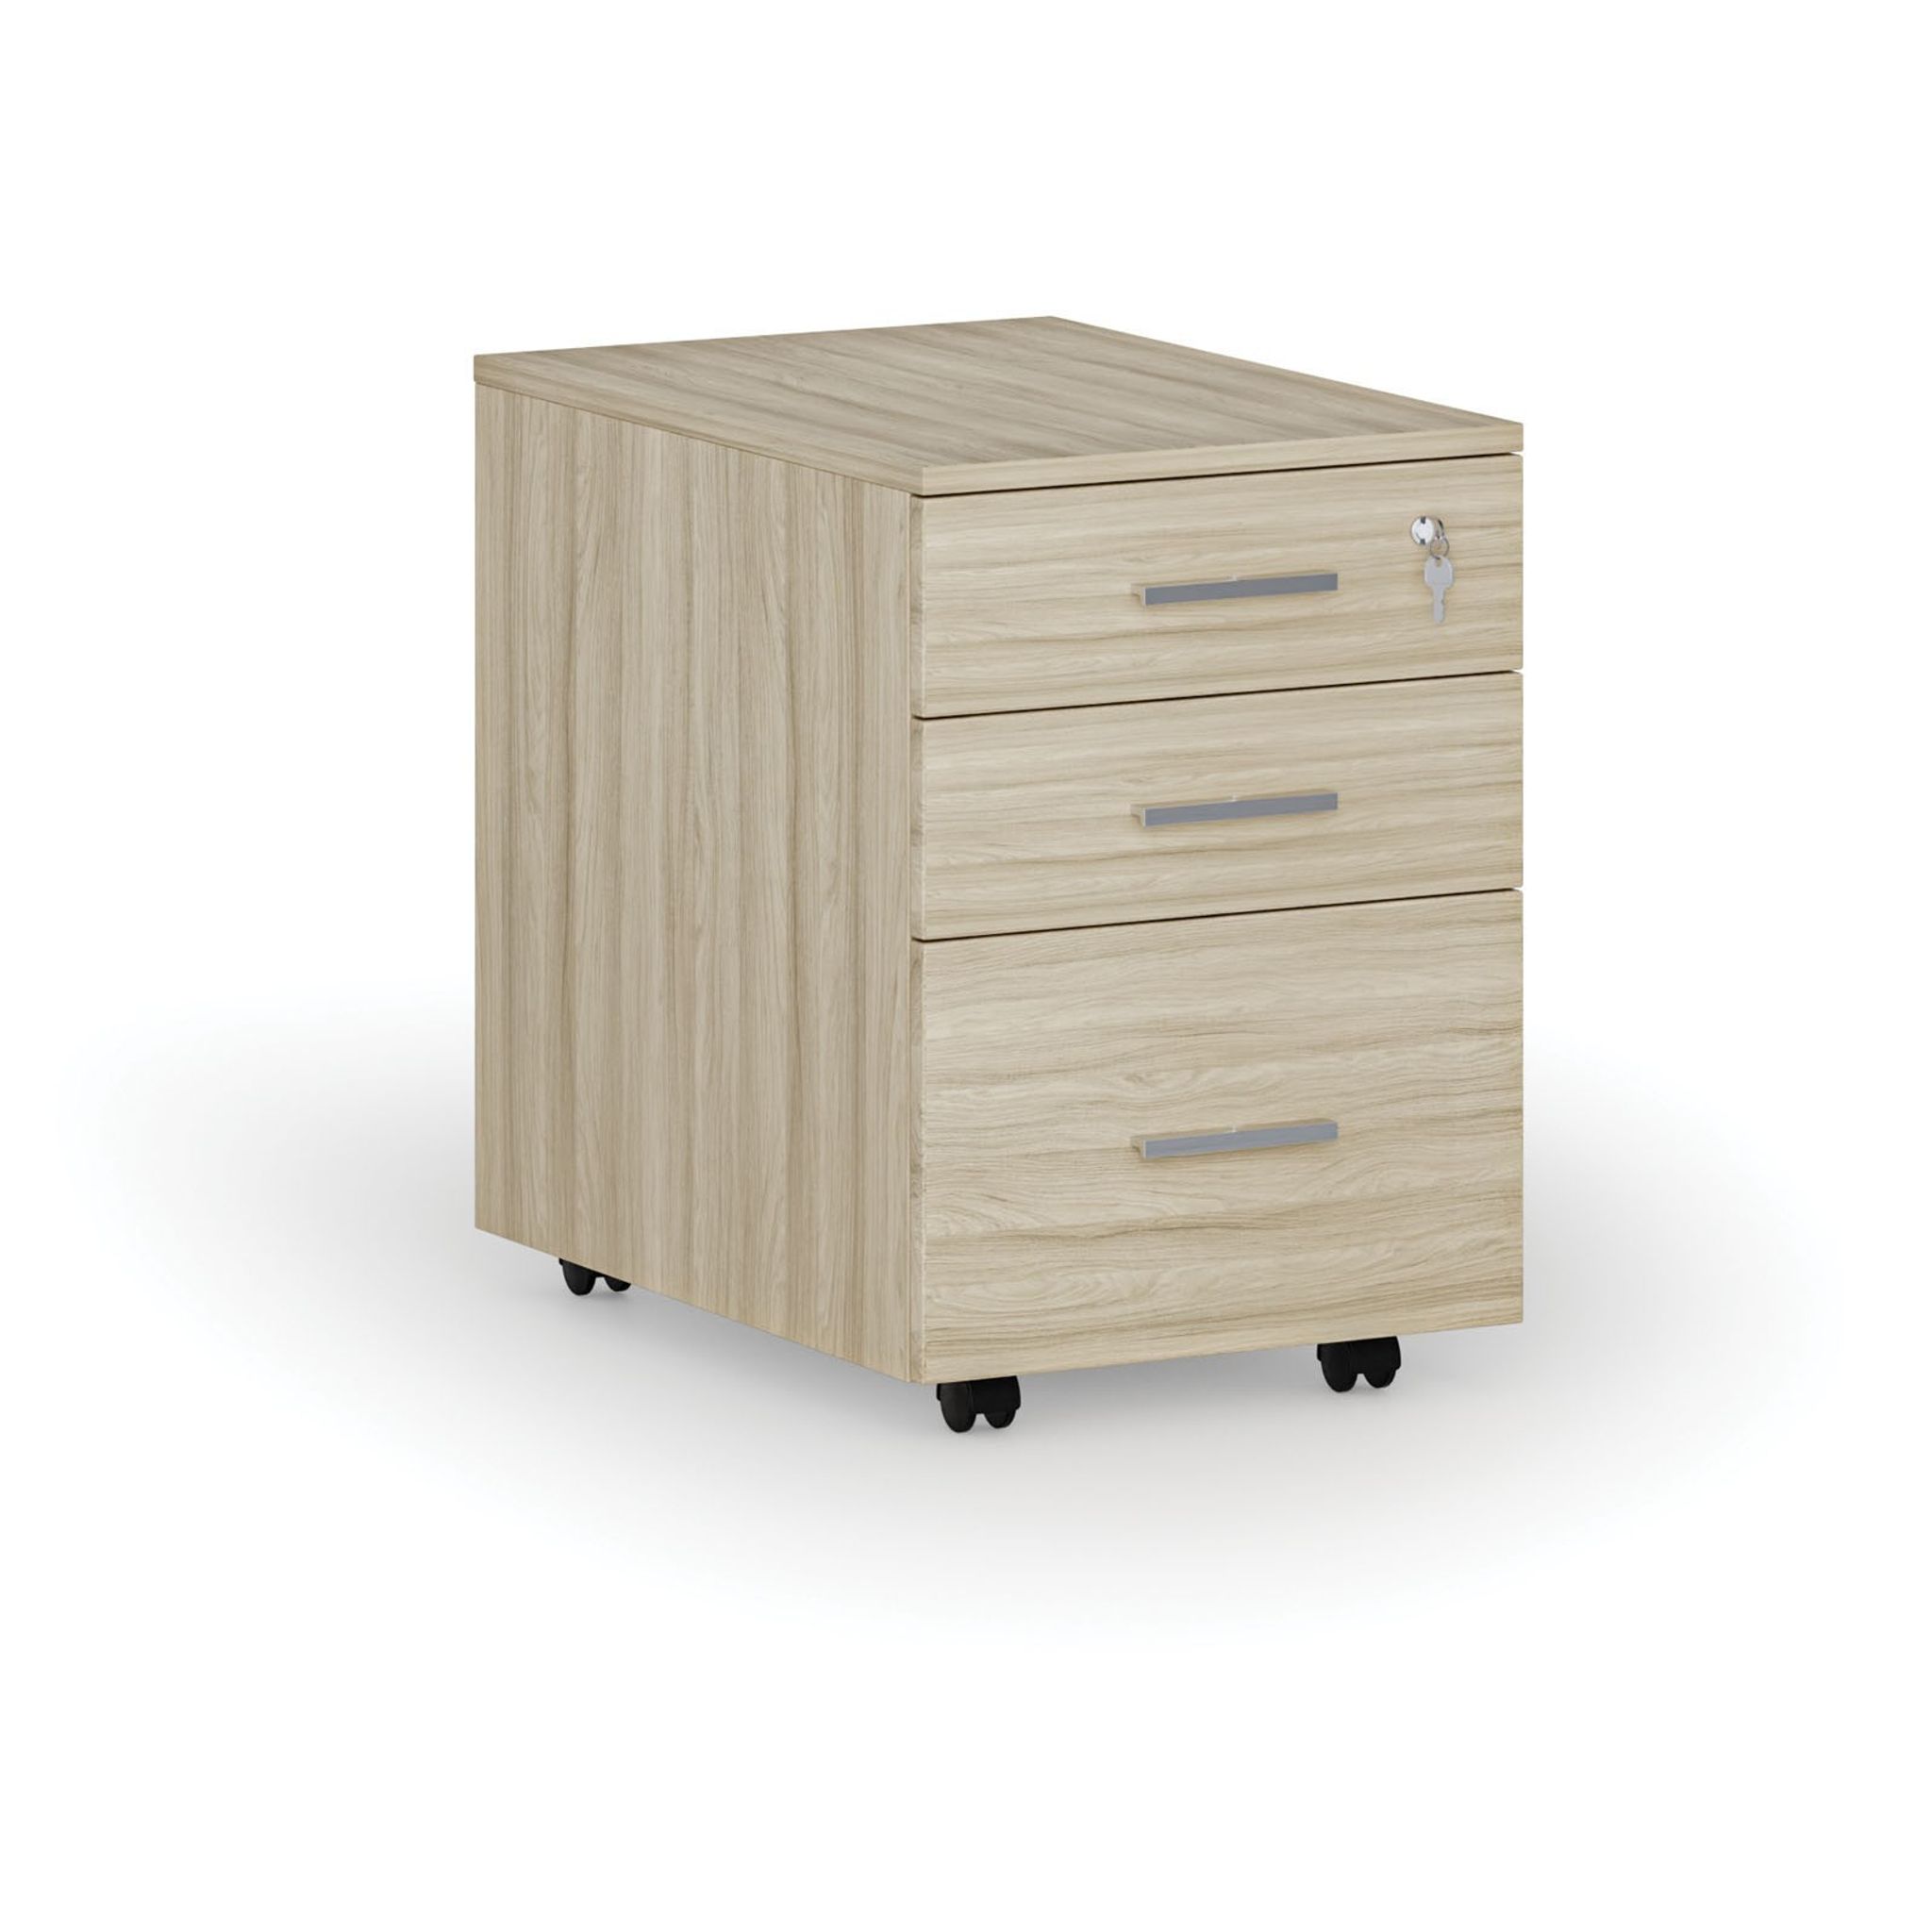 Büro-Rollcontainer für Hängeregister SEGMENT, 3 Schubladen, 430 x 546 x 619 mm, Eiche natur